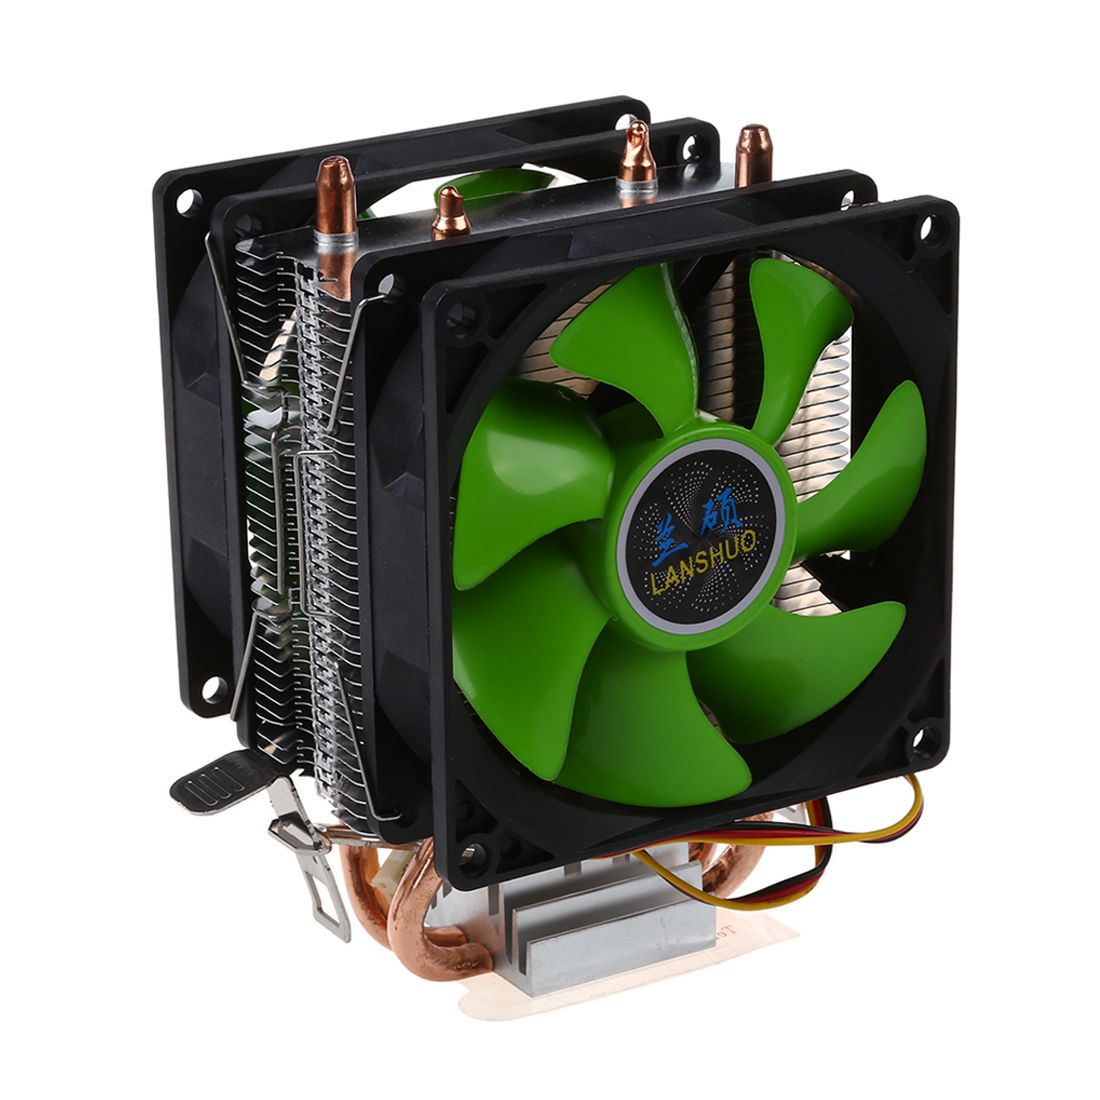 HOT-CPU cooler Silent Fan For Intel LGA775 / 1156/1155 AMD AM2 / AM2 + / AM3